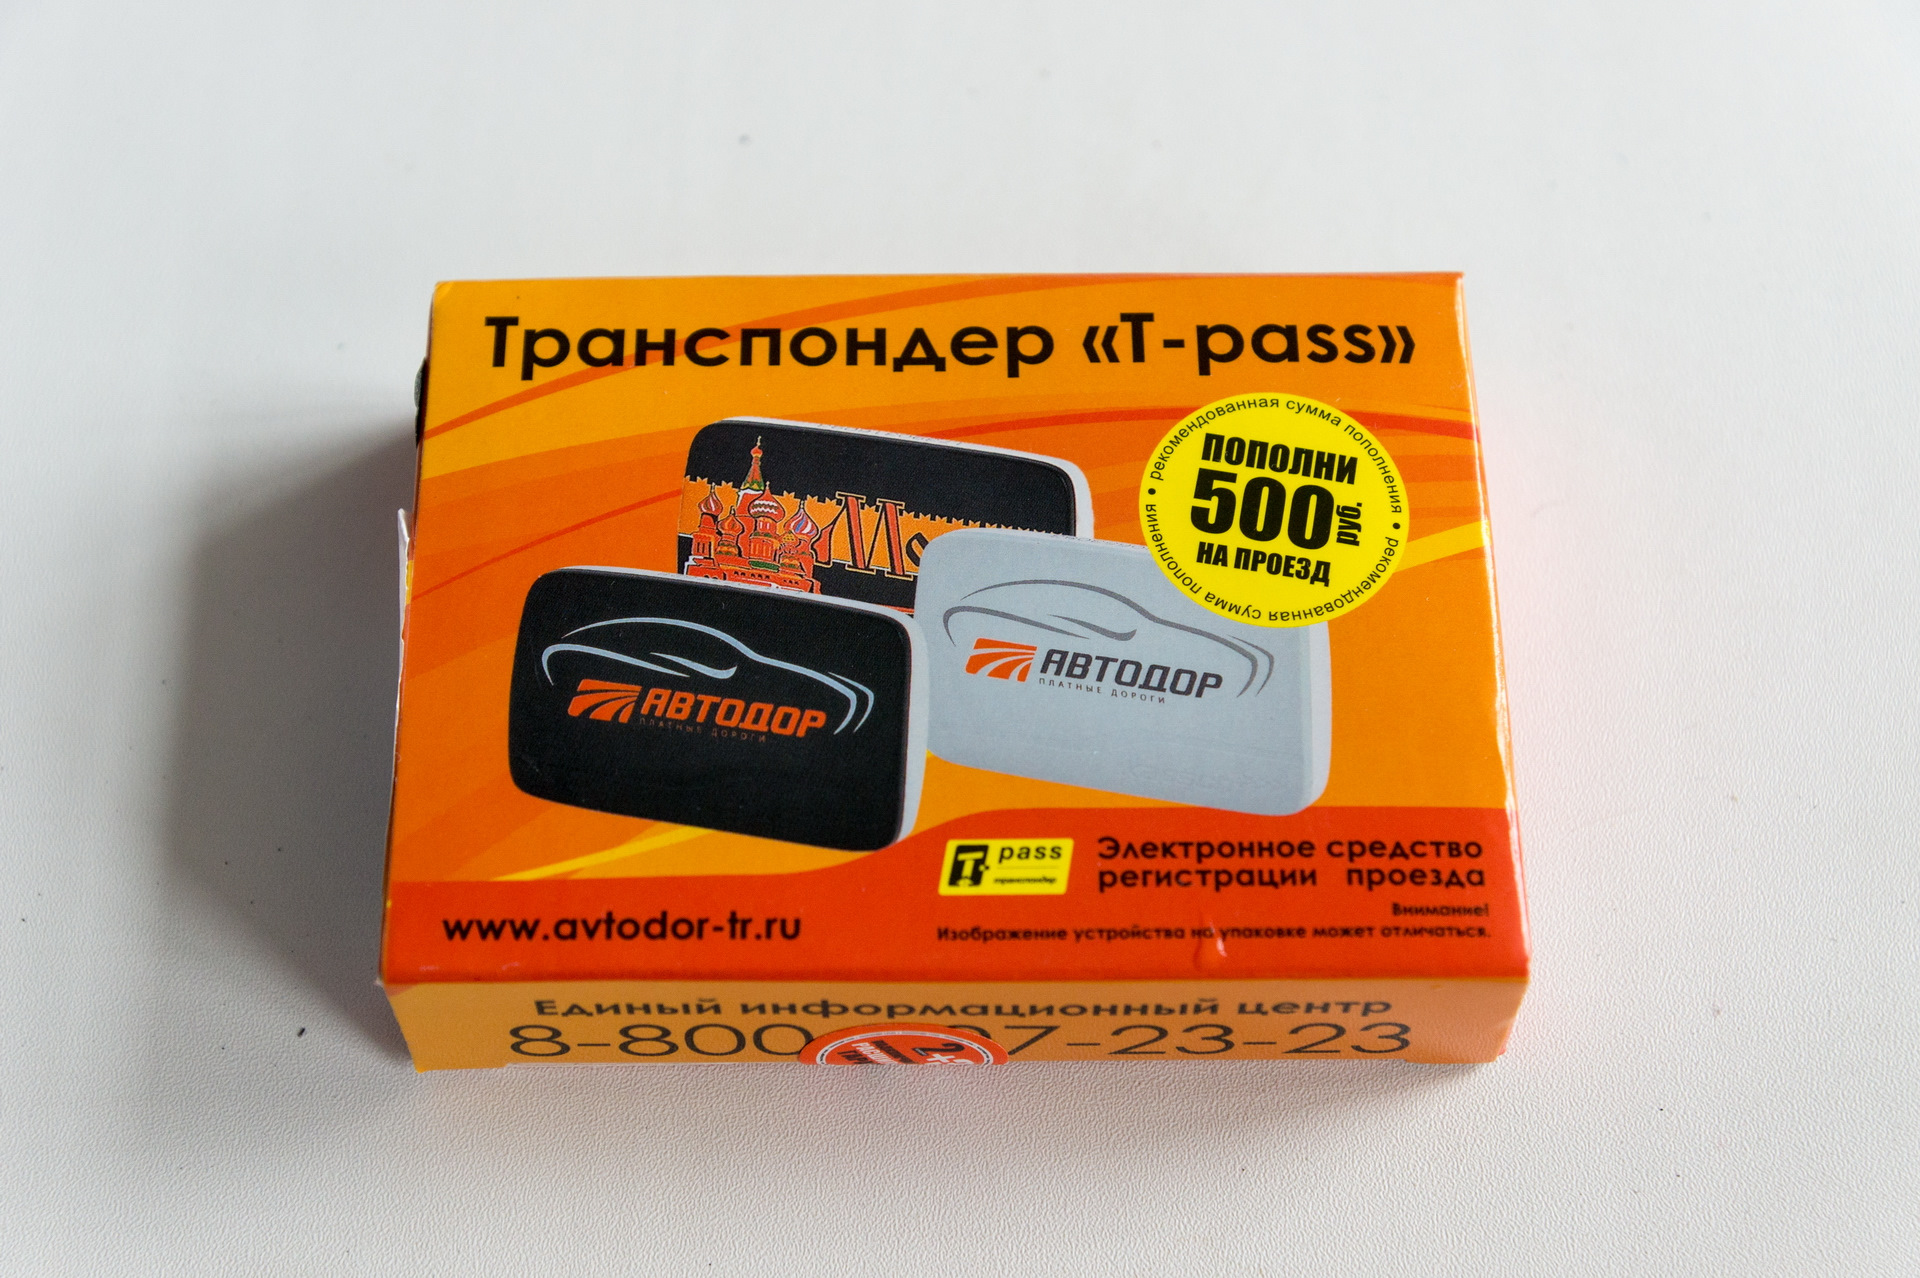 Где Можно Купить Транспондер В Москве